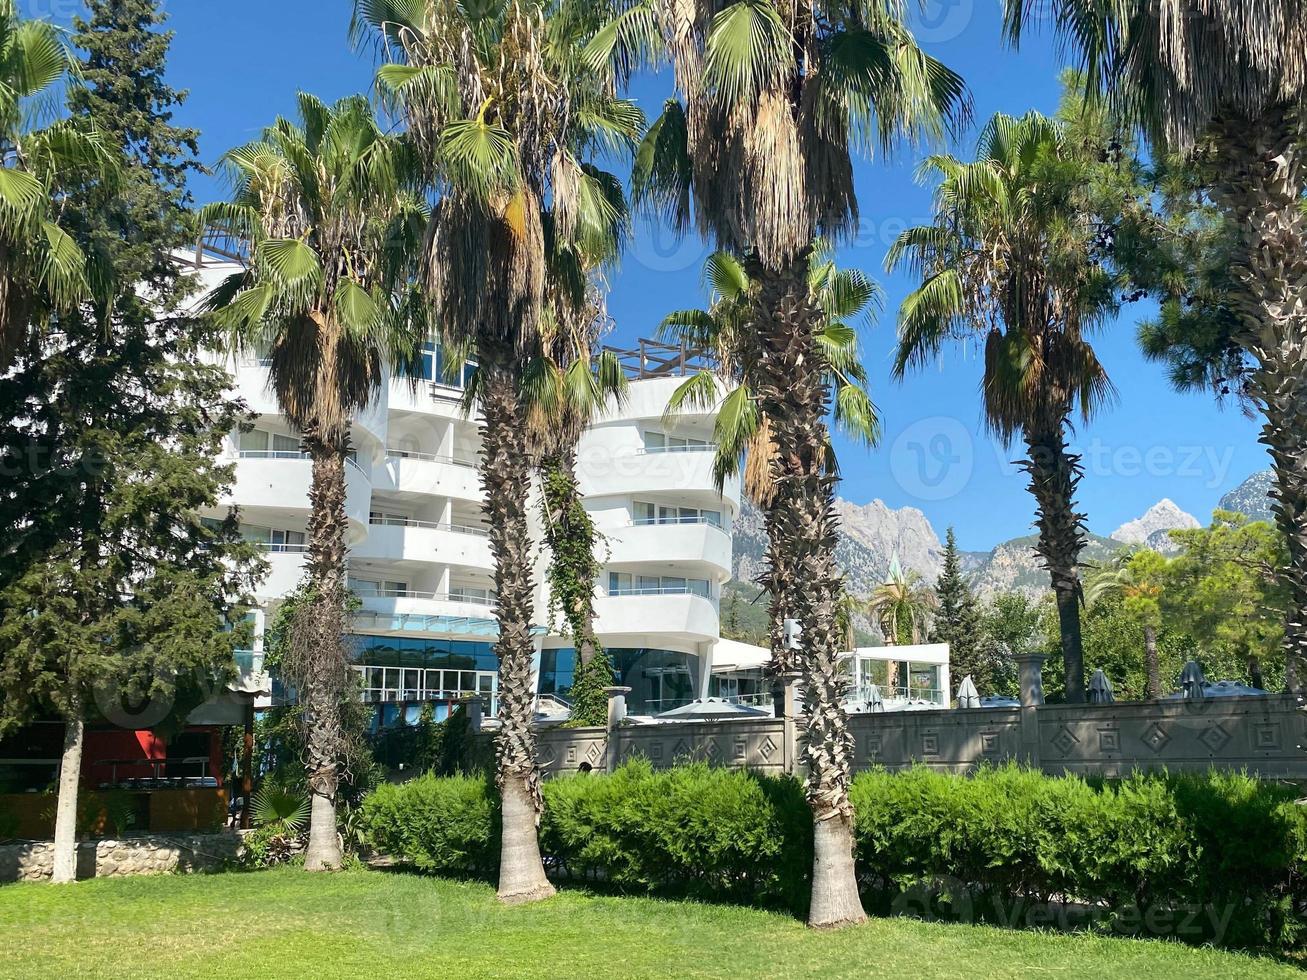 condo de plage sud blanc avec palmiers photo